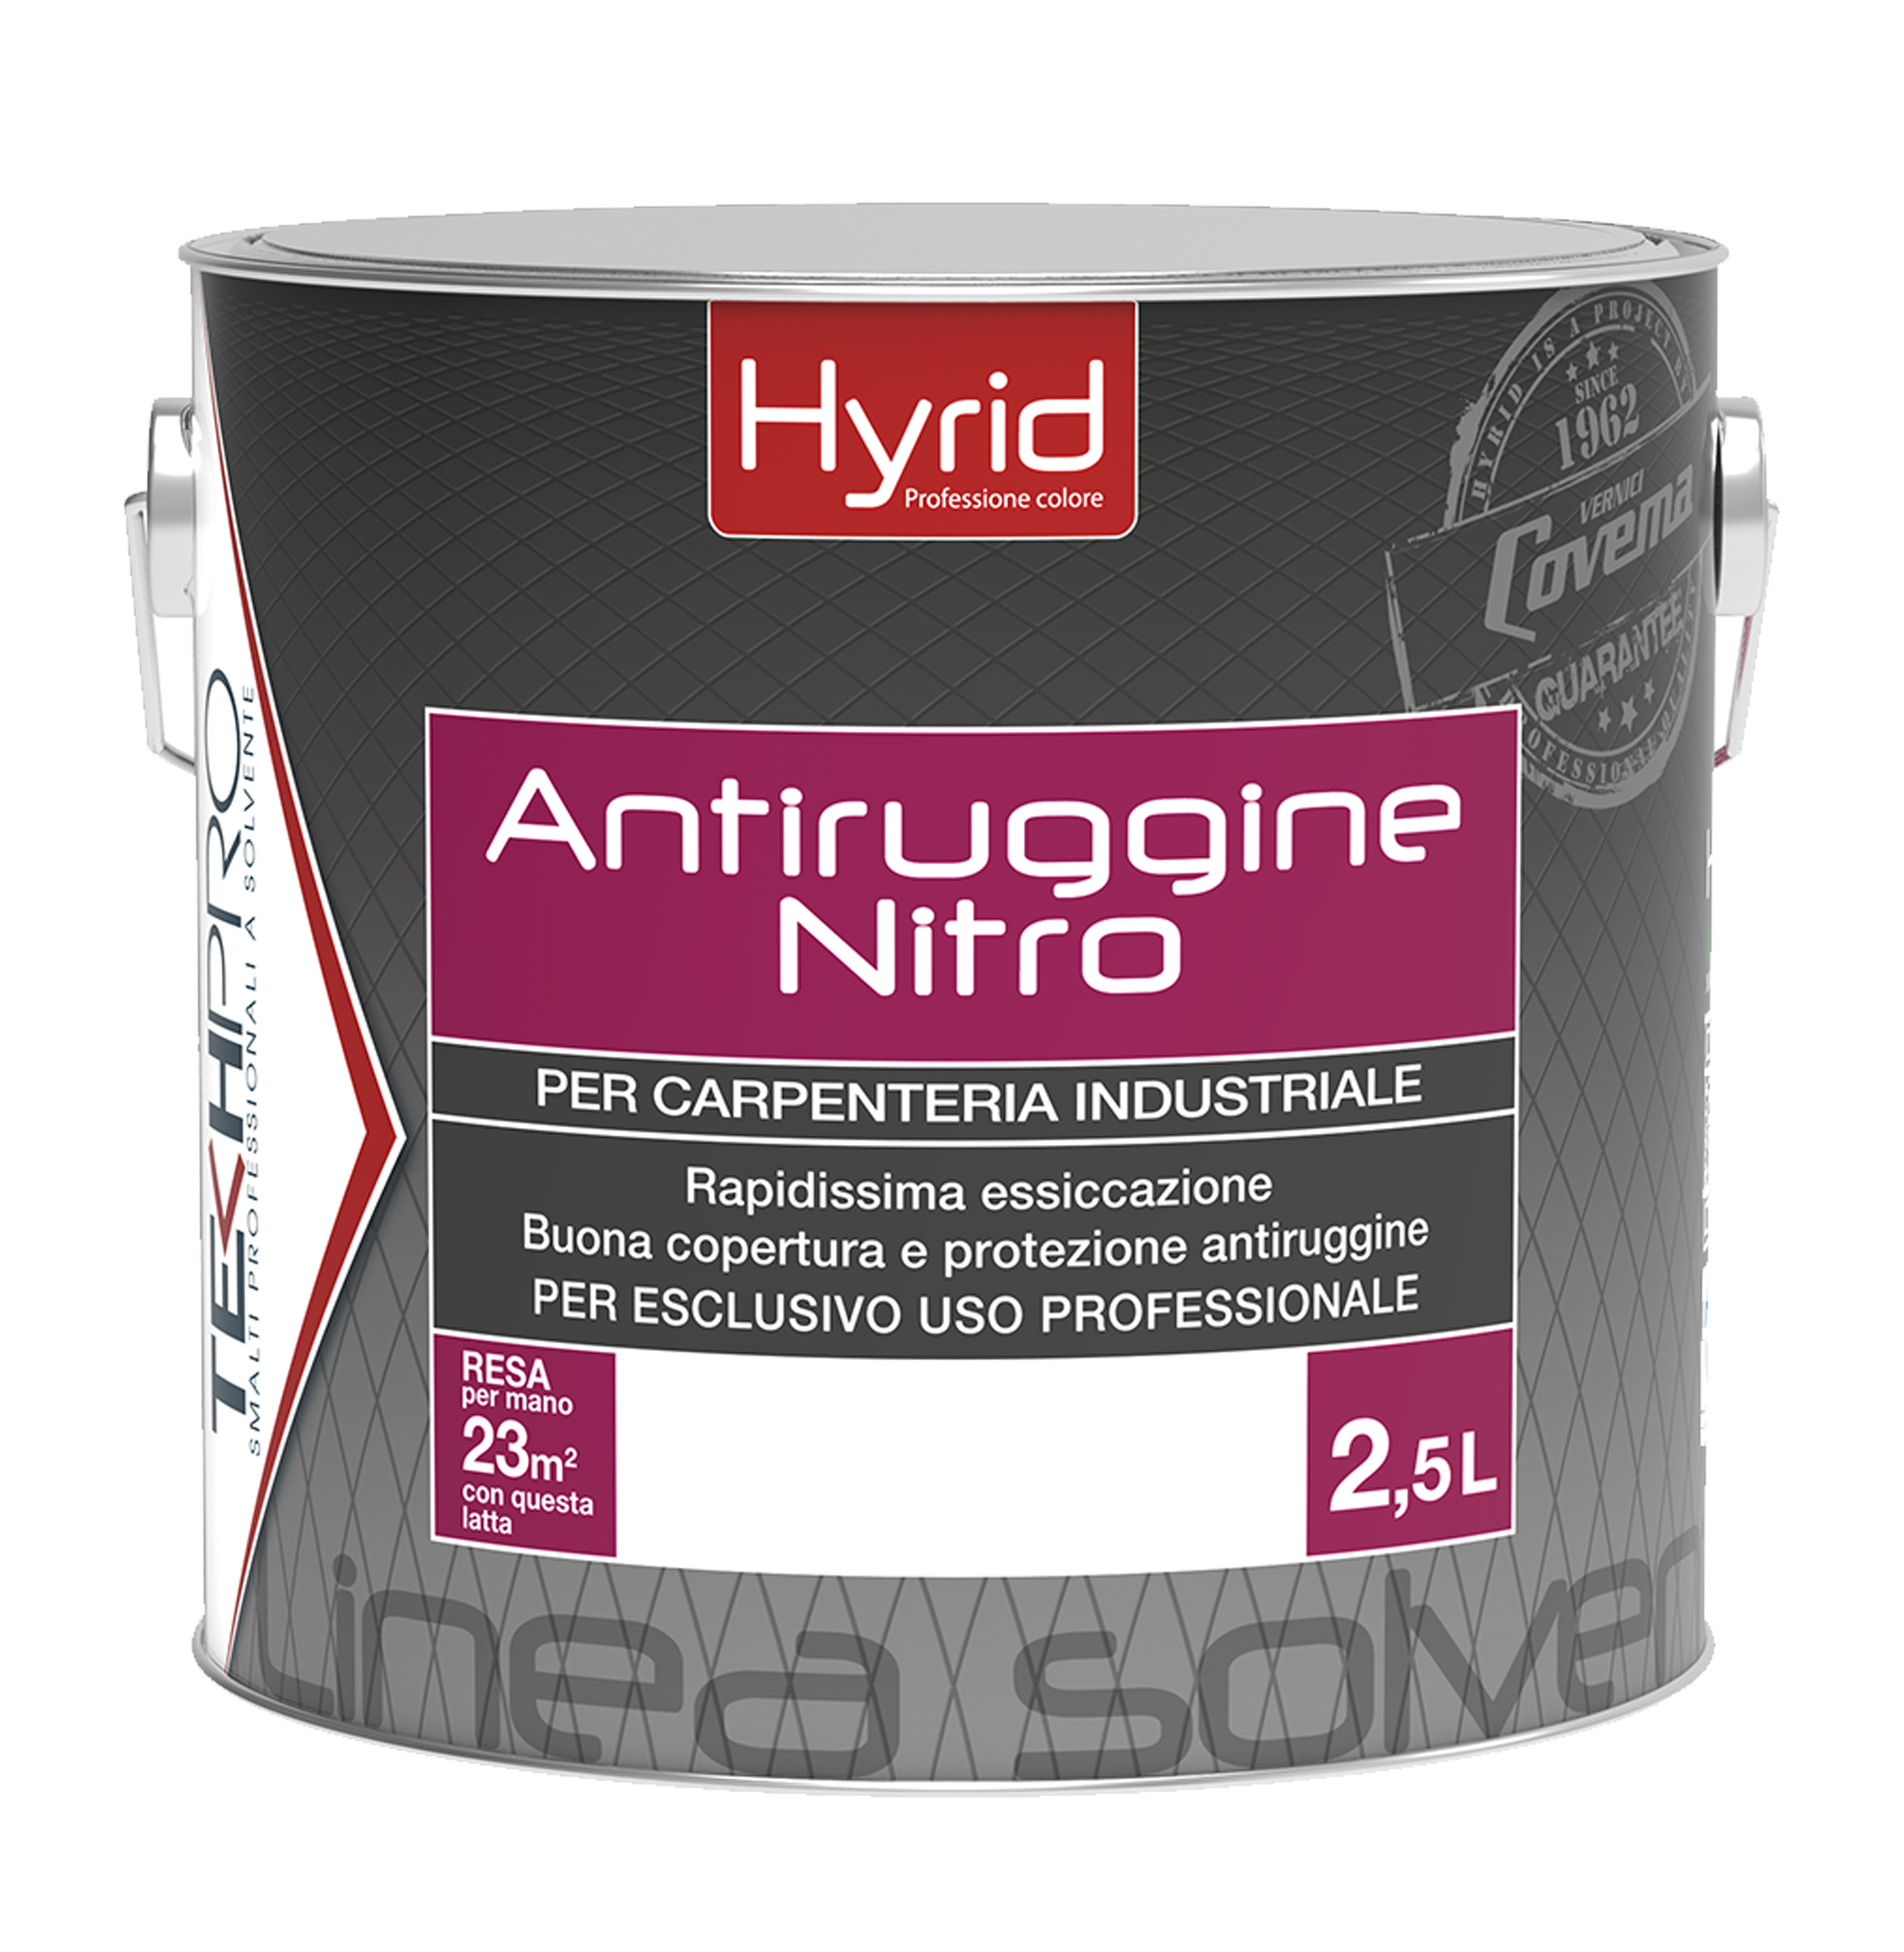 Hyrid Antiruggine Nitro